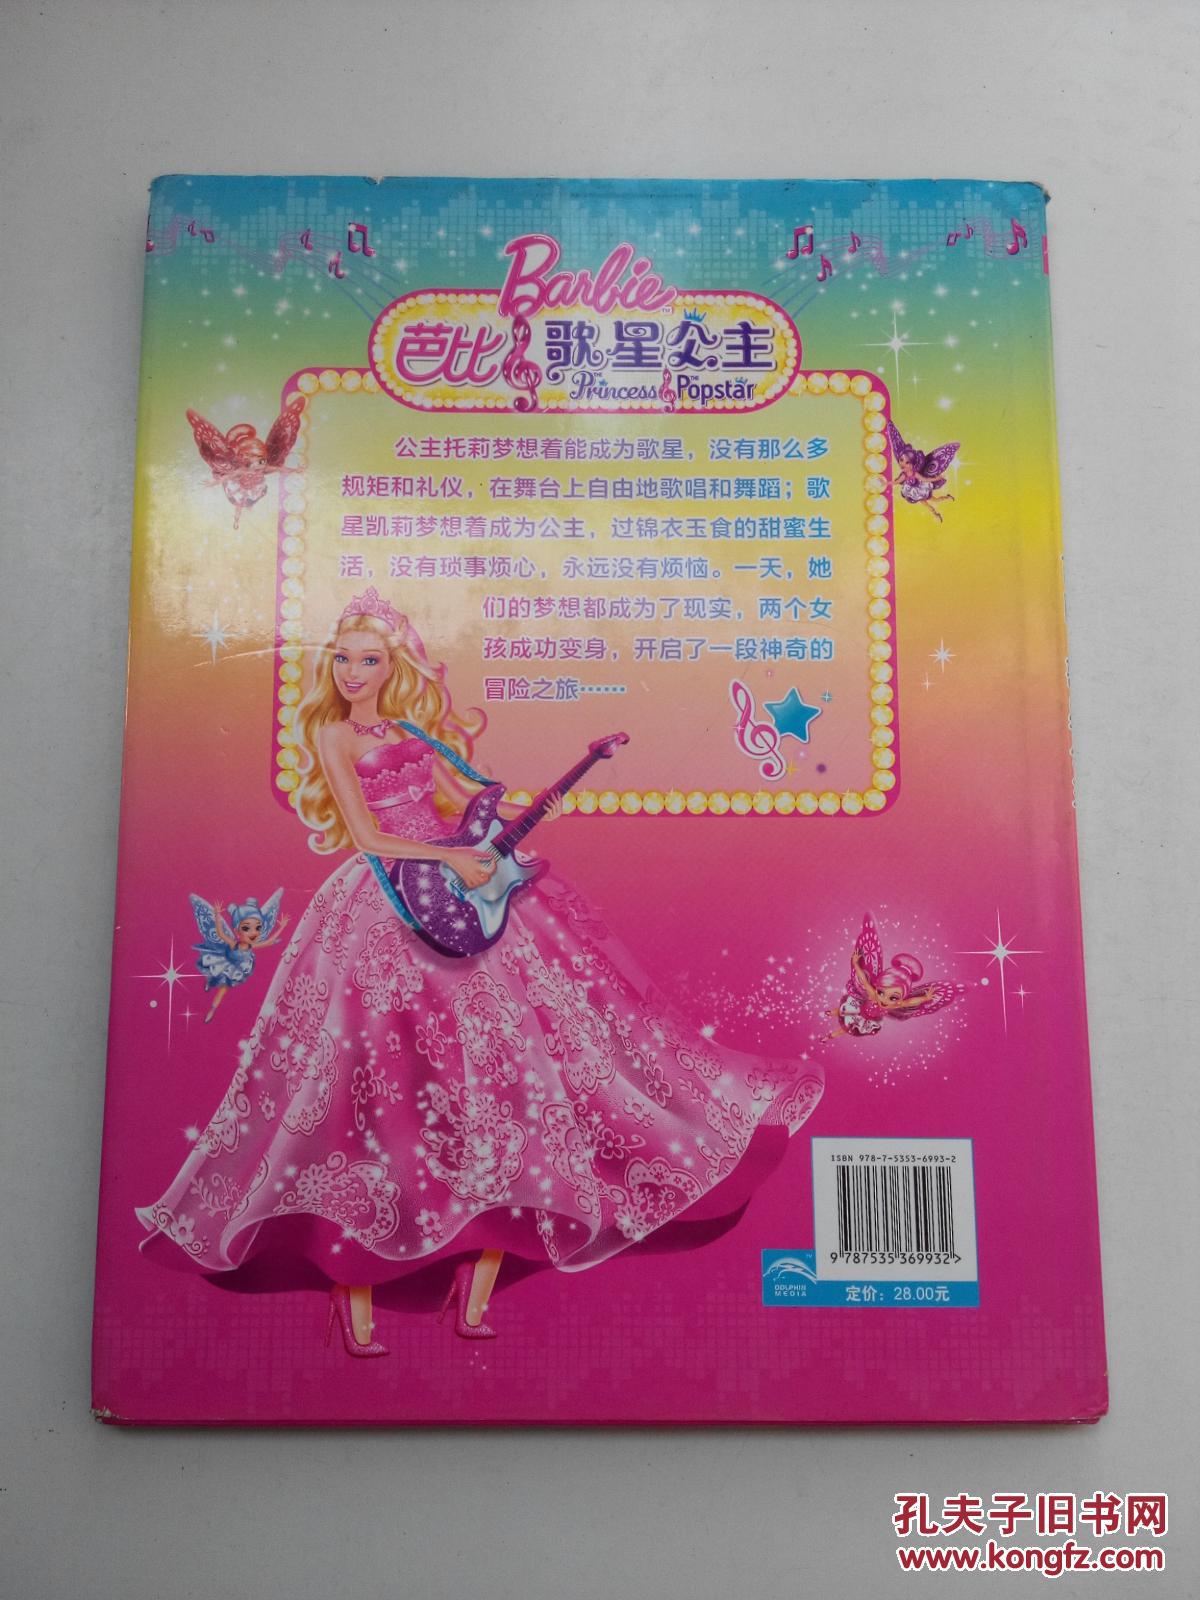 芭比之歌星公主中文版全集播放_芭比电影歌星公主国语